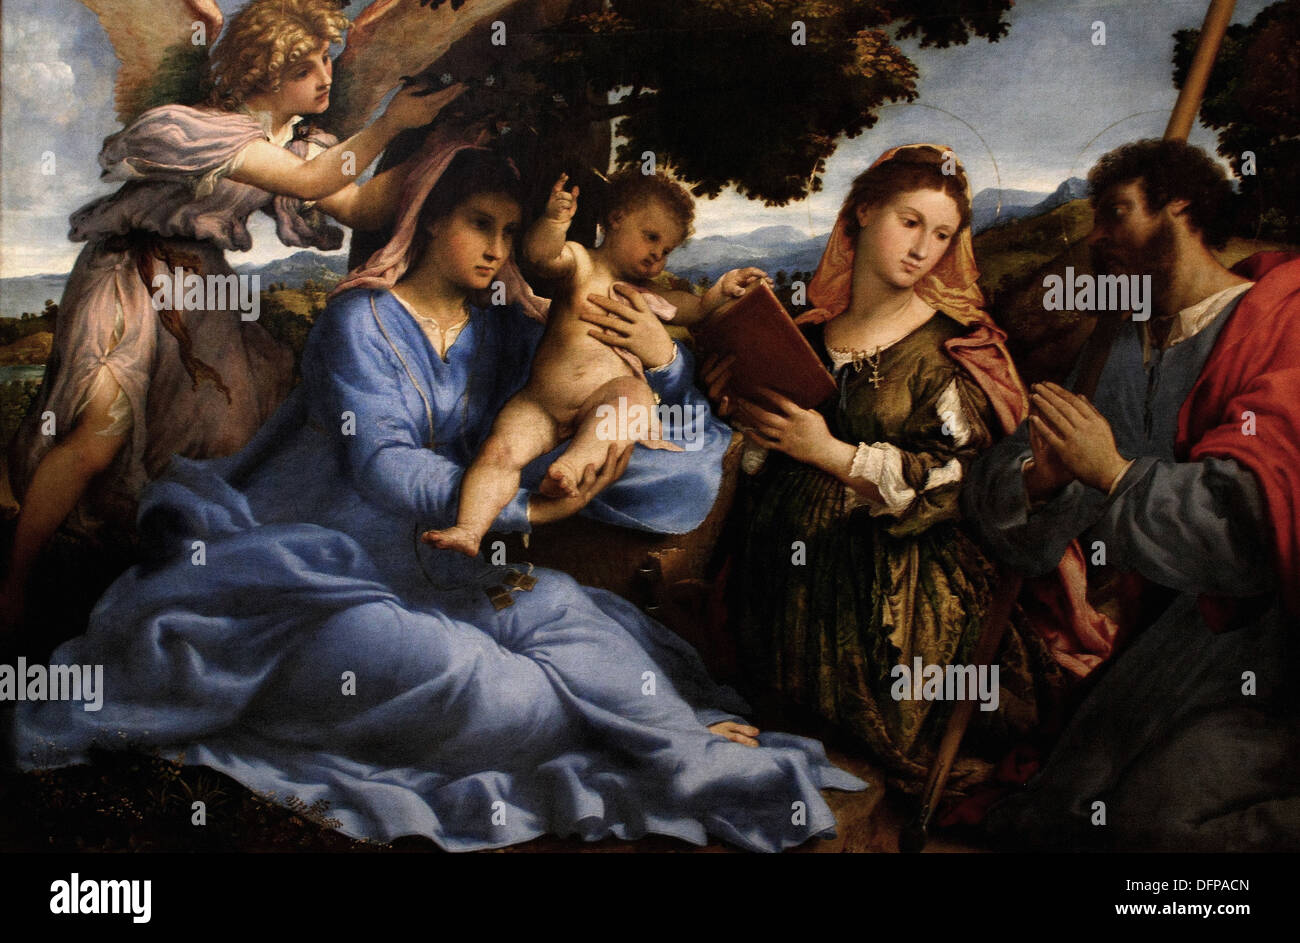 Lorenzo Lotto - María con el niño- 1533 - Museo Kunsthistoriches - Viena Foto de stock